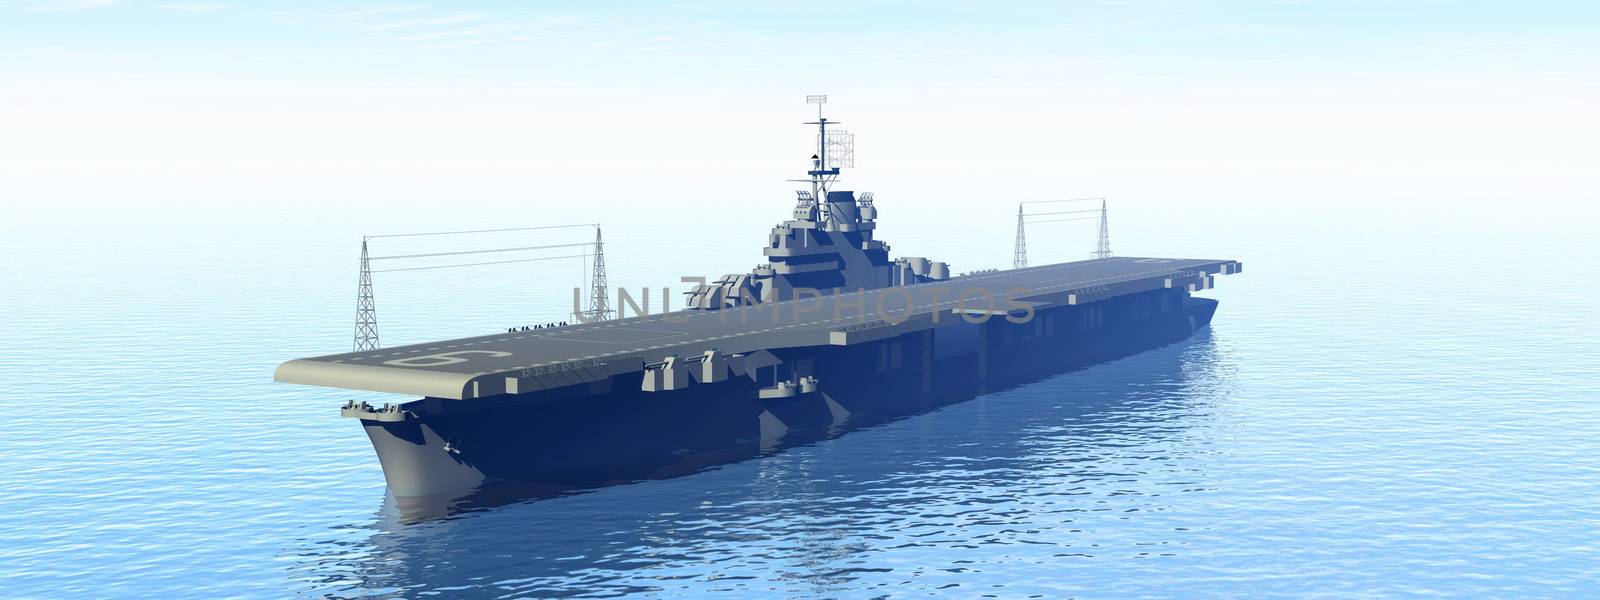 Aircraft carrier - 3D render by Elenaphotos21